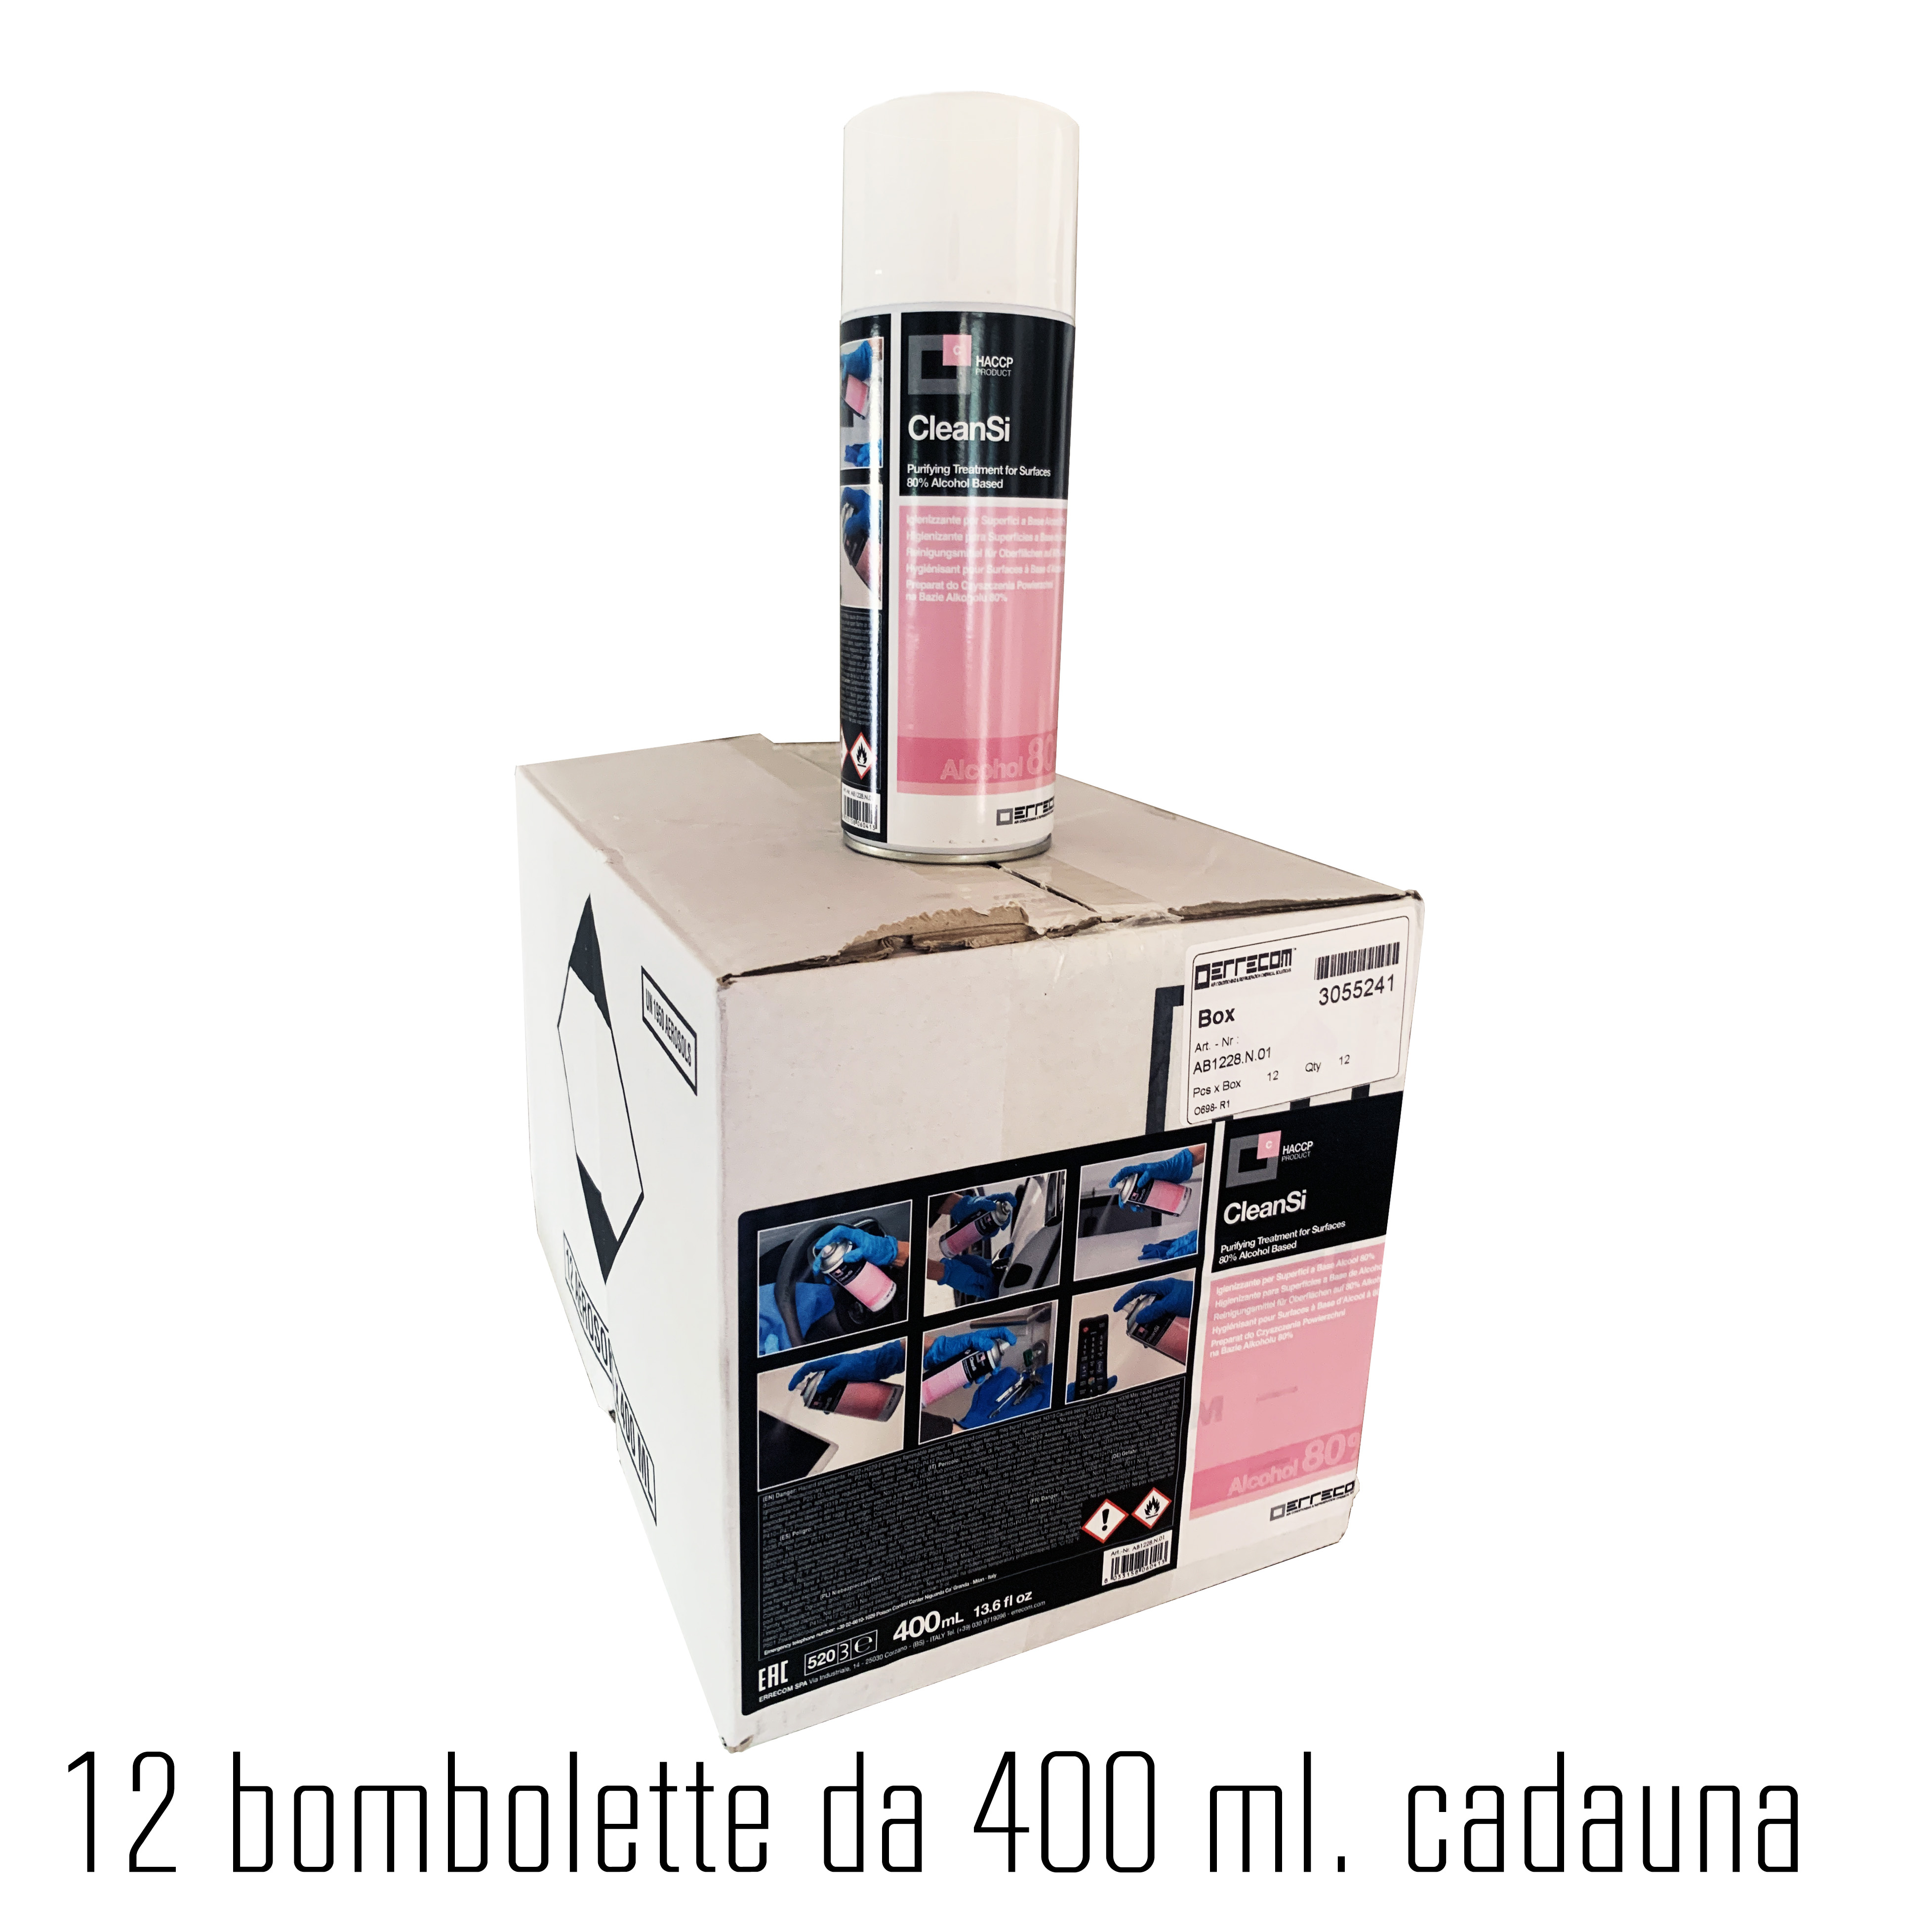 CleanSi - Spray Igienizzante per Superfici a Base Alcool 80% - 400 ml - Disinfettante registrato in Germania (N90037) - confezione n° 12 bombolette - Foto 2